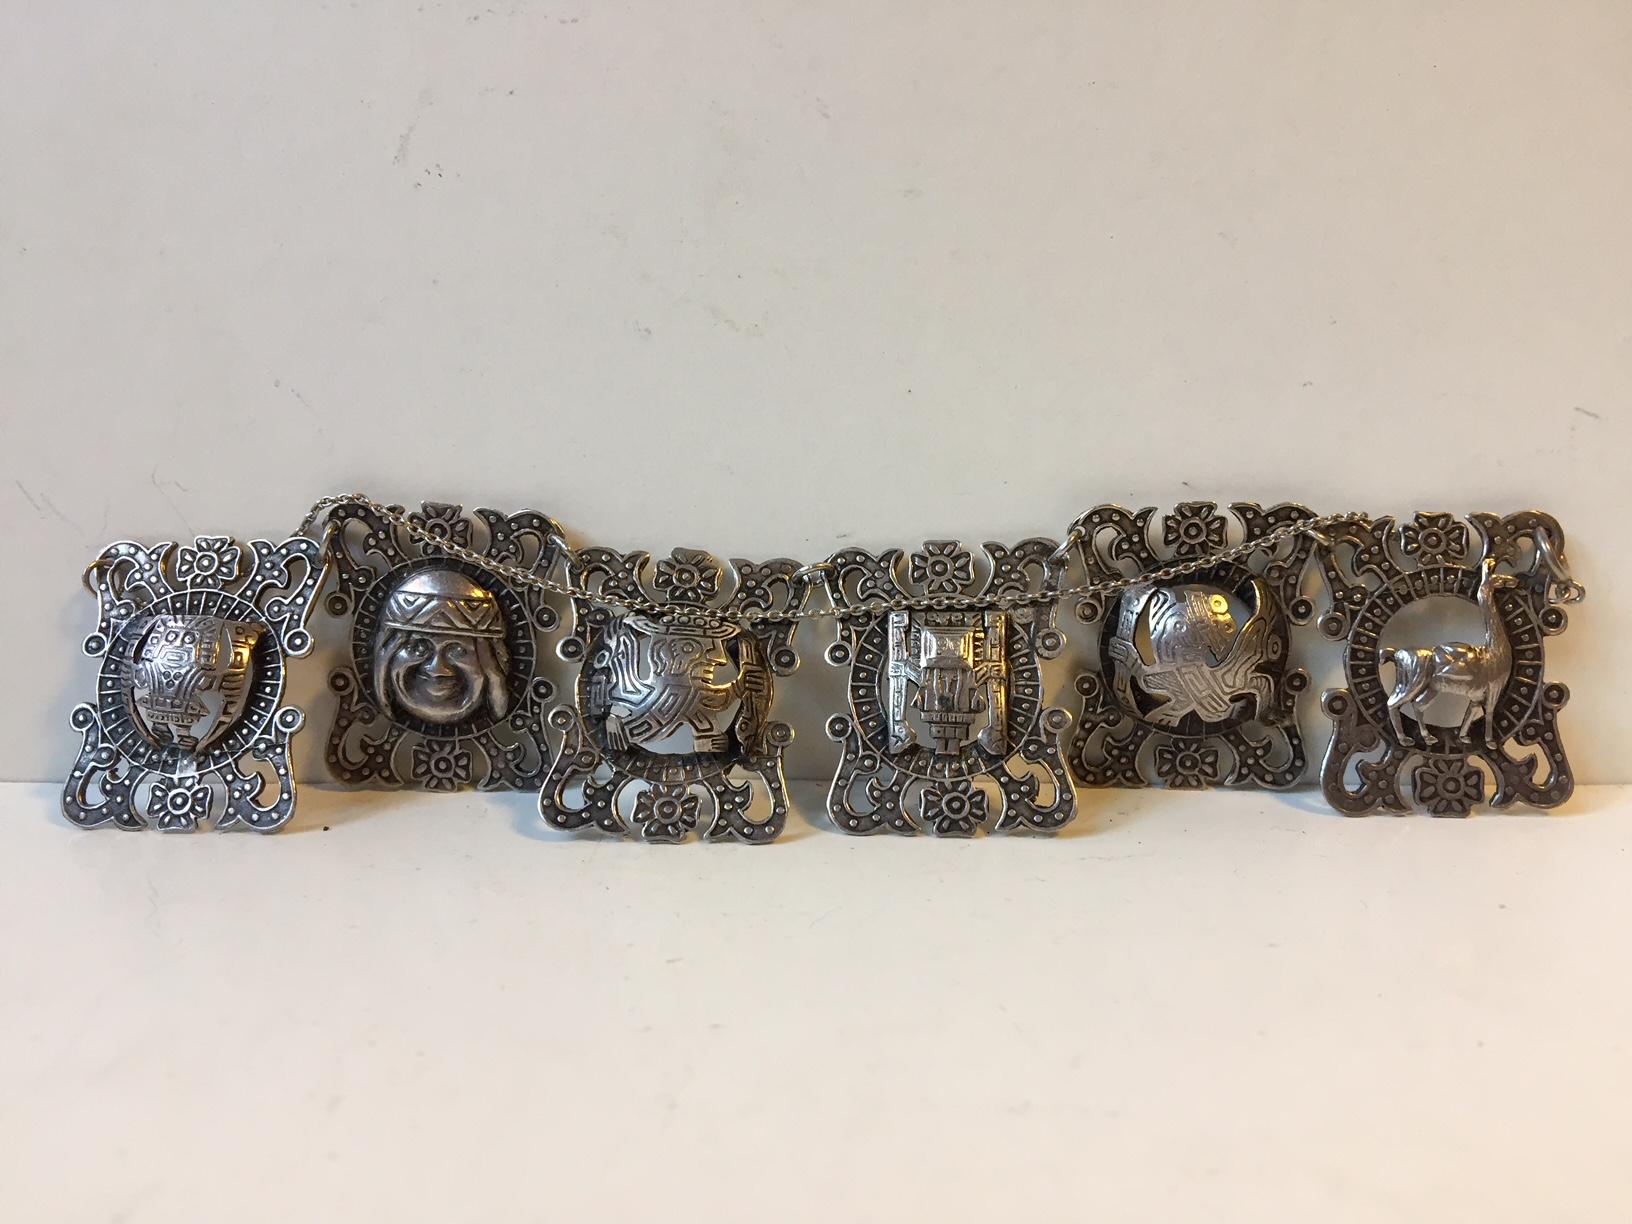 Cet ensemble, composé d'un bracelet en panneaux péruviens et d'un collier assorti, est le fruit d'un travail artisanal fin et détaillé. Les deux pièces sont entièrement poinçonnées et datent des années 1970. Les panneaux mesurent 38 mm de hauteur